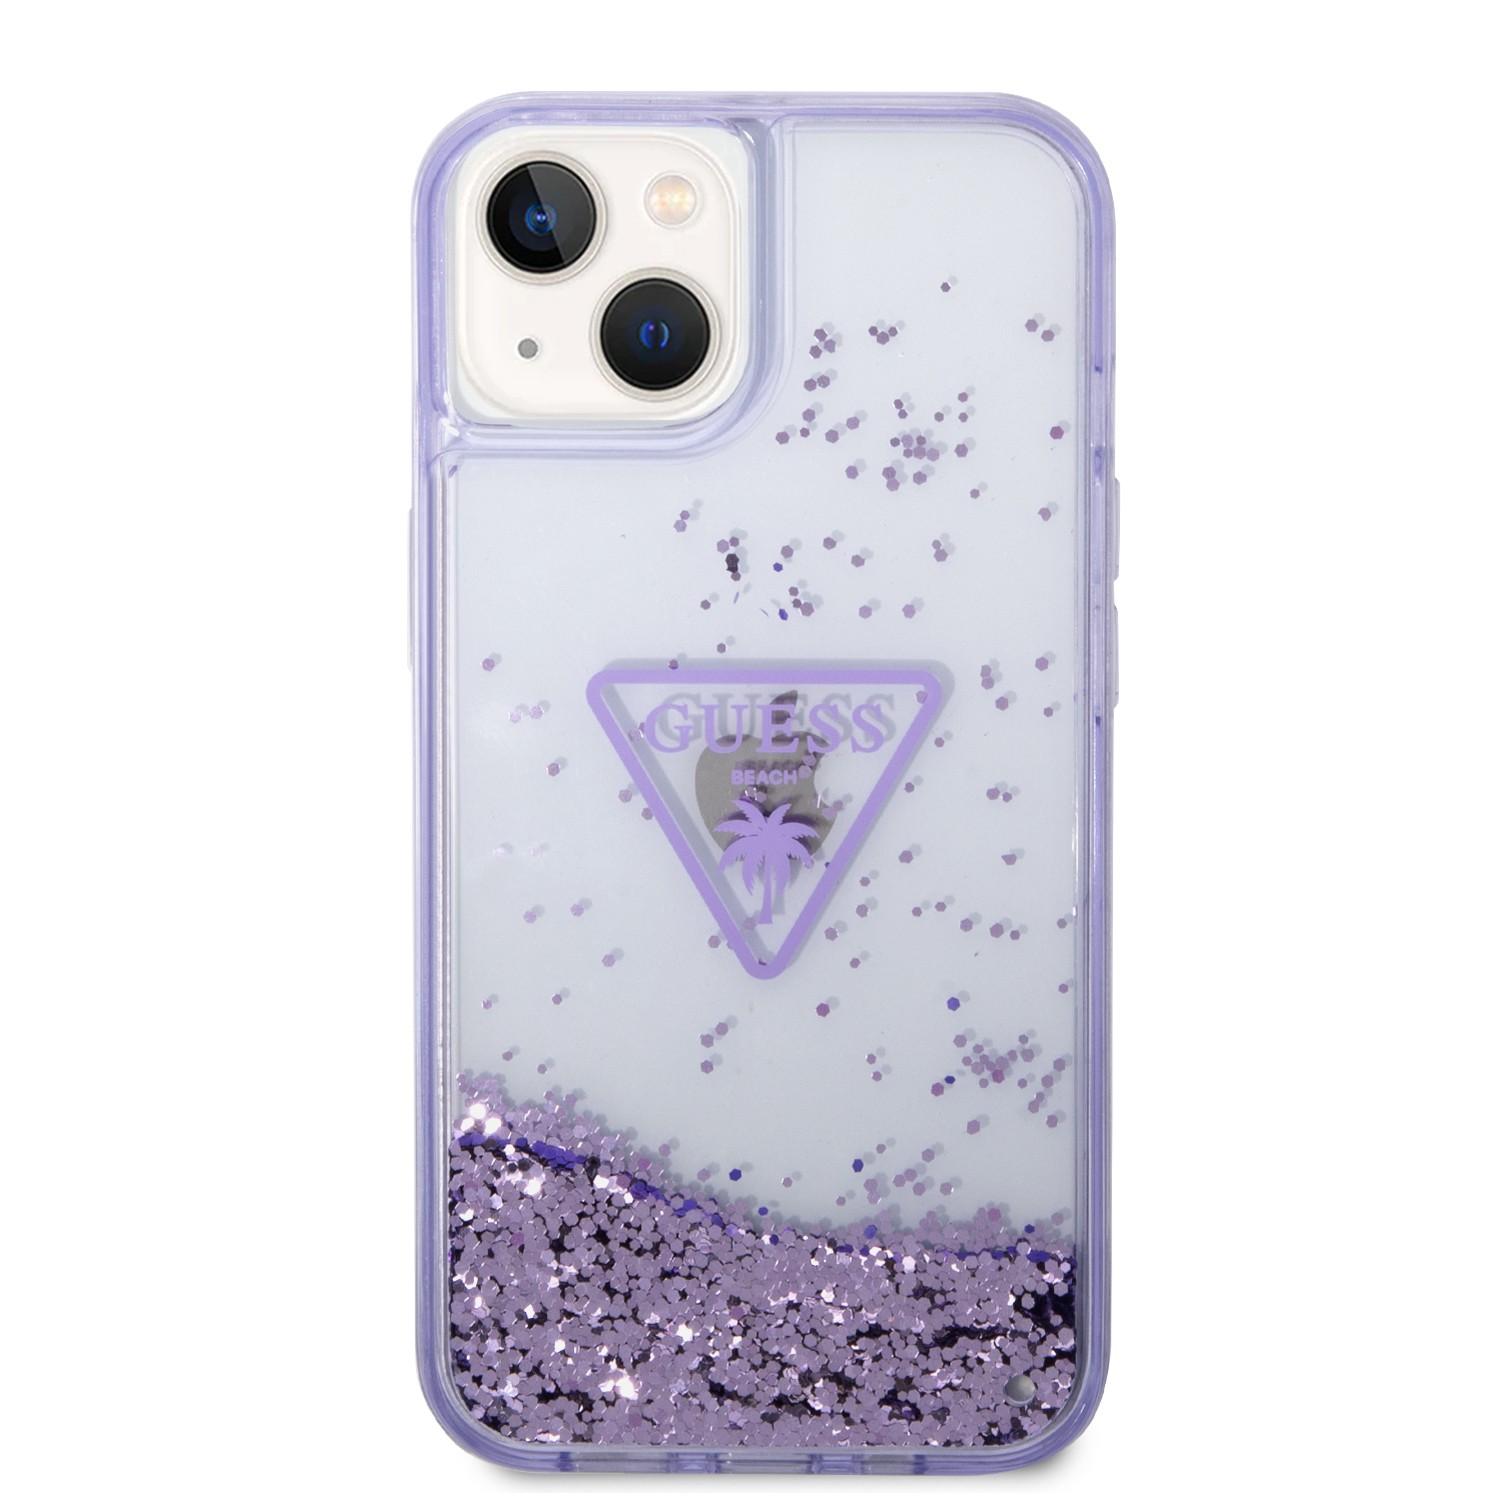 كفر ايفون 14 نهدي جيس Guess Liquid Glitter Triangle Hard Case for iPhone 14 Translucent Purple - cG9zdDoxMzg0MDg1